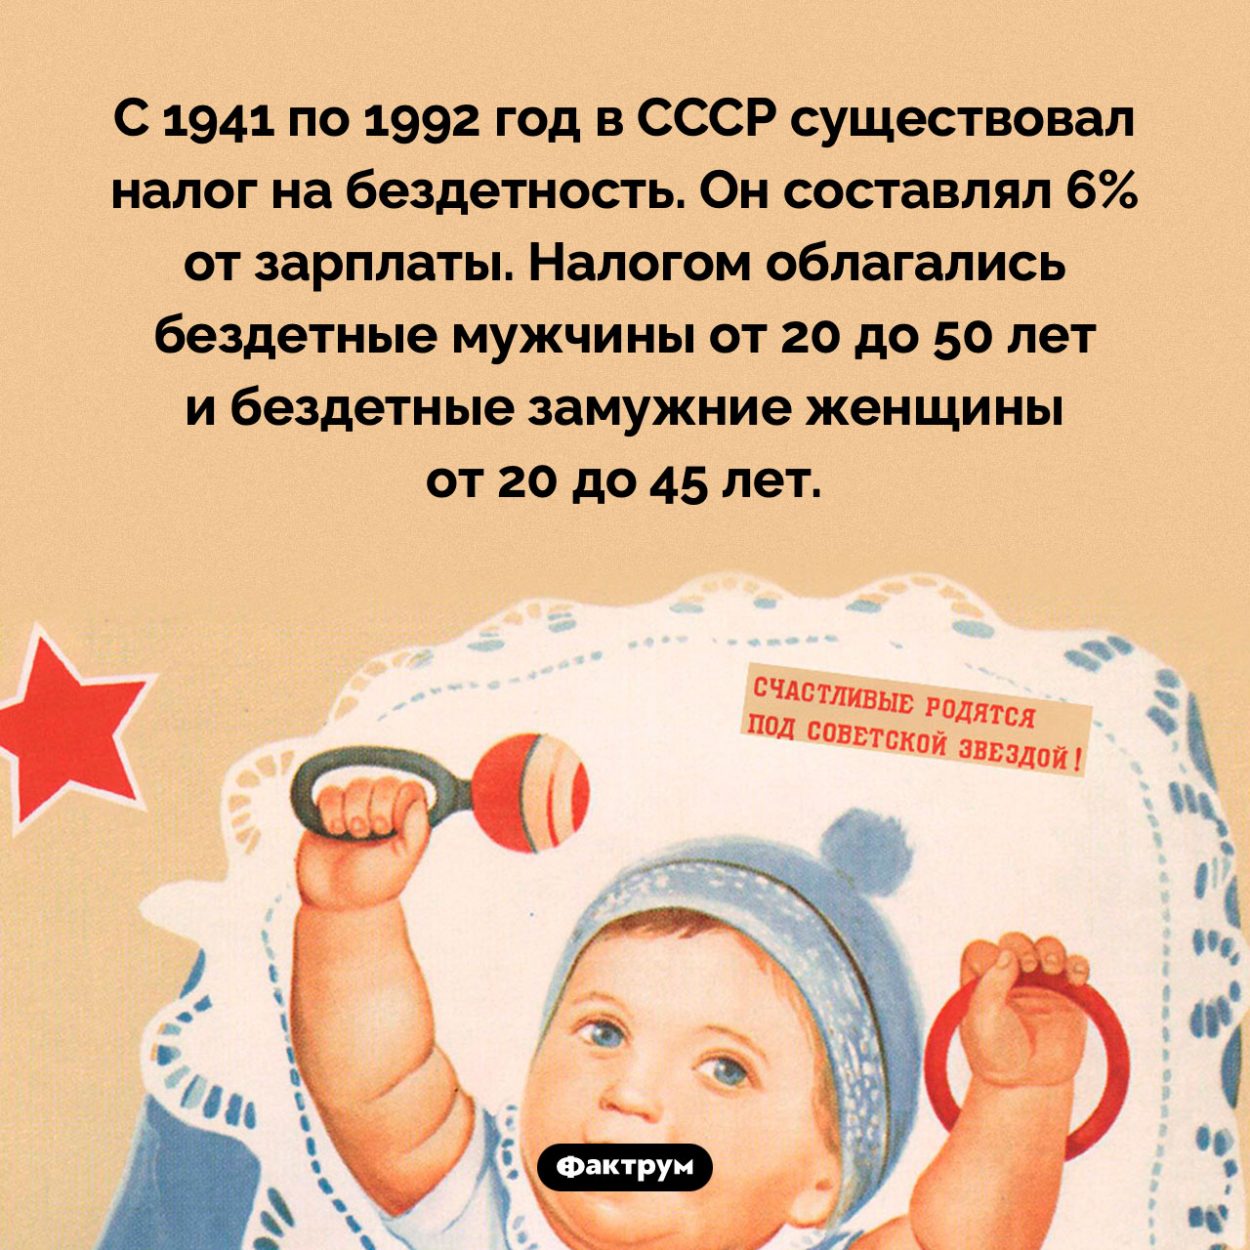 В СССР более 50 лет действовал налог на бездетность. С 1941 по 1992 год в СССР существовал налог на бездетность. Он составлял 6% от зарплаты. Налогом облагались бездетные мужчины от 20 до 50 лет и бездетные замужние женщины от 20 до 45 лет.